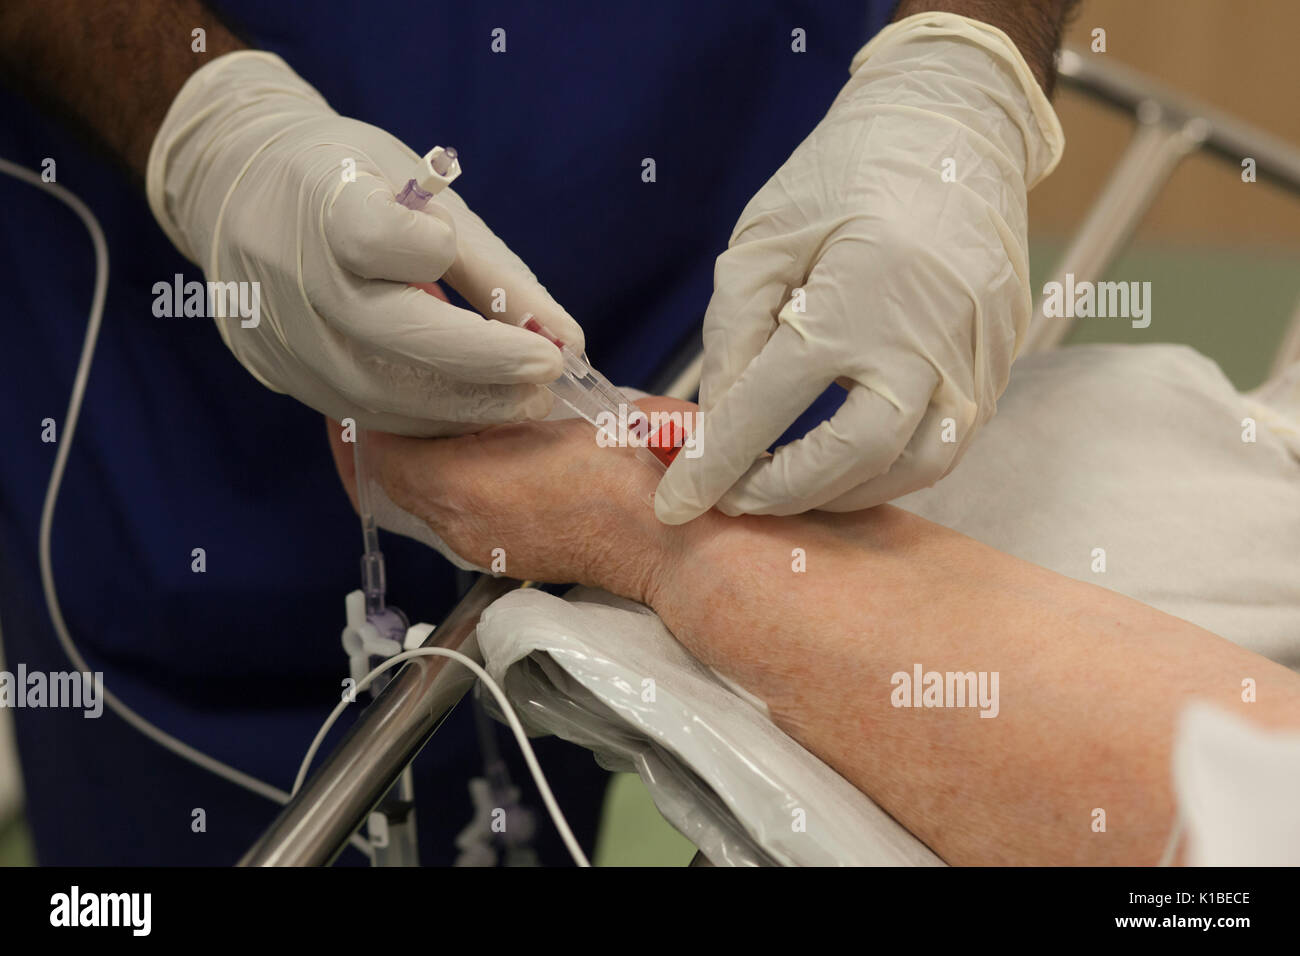 Un anestetico gocciolamento è collegato a un paziente prima di un intervento in un ospedale di NHS Foto Stock